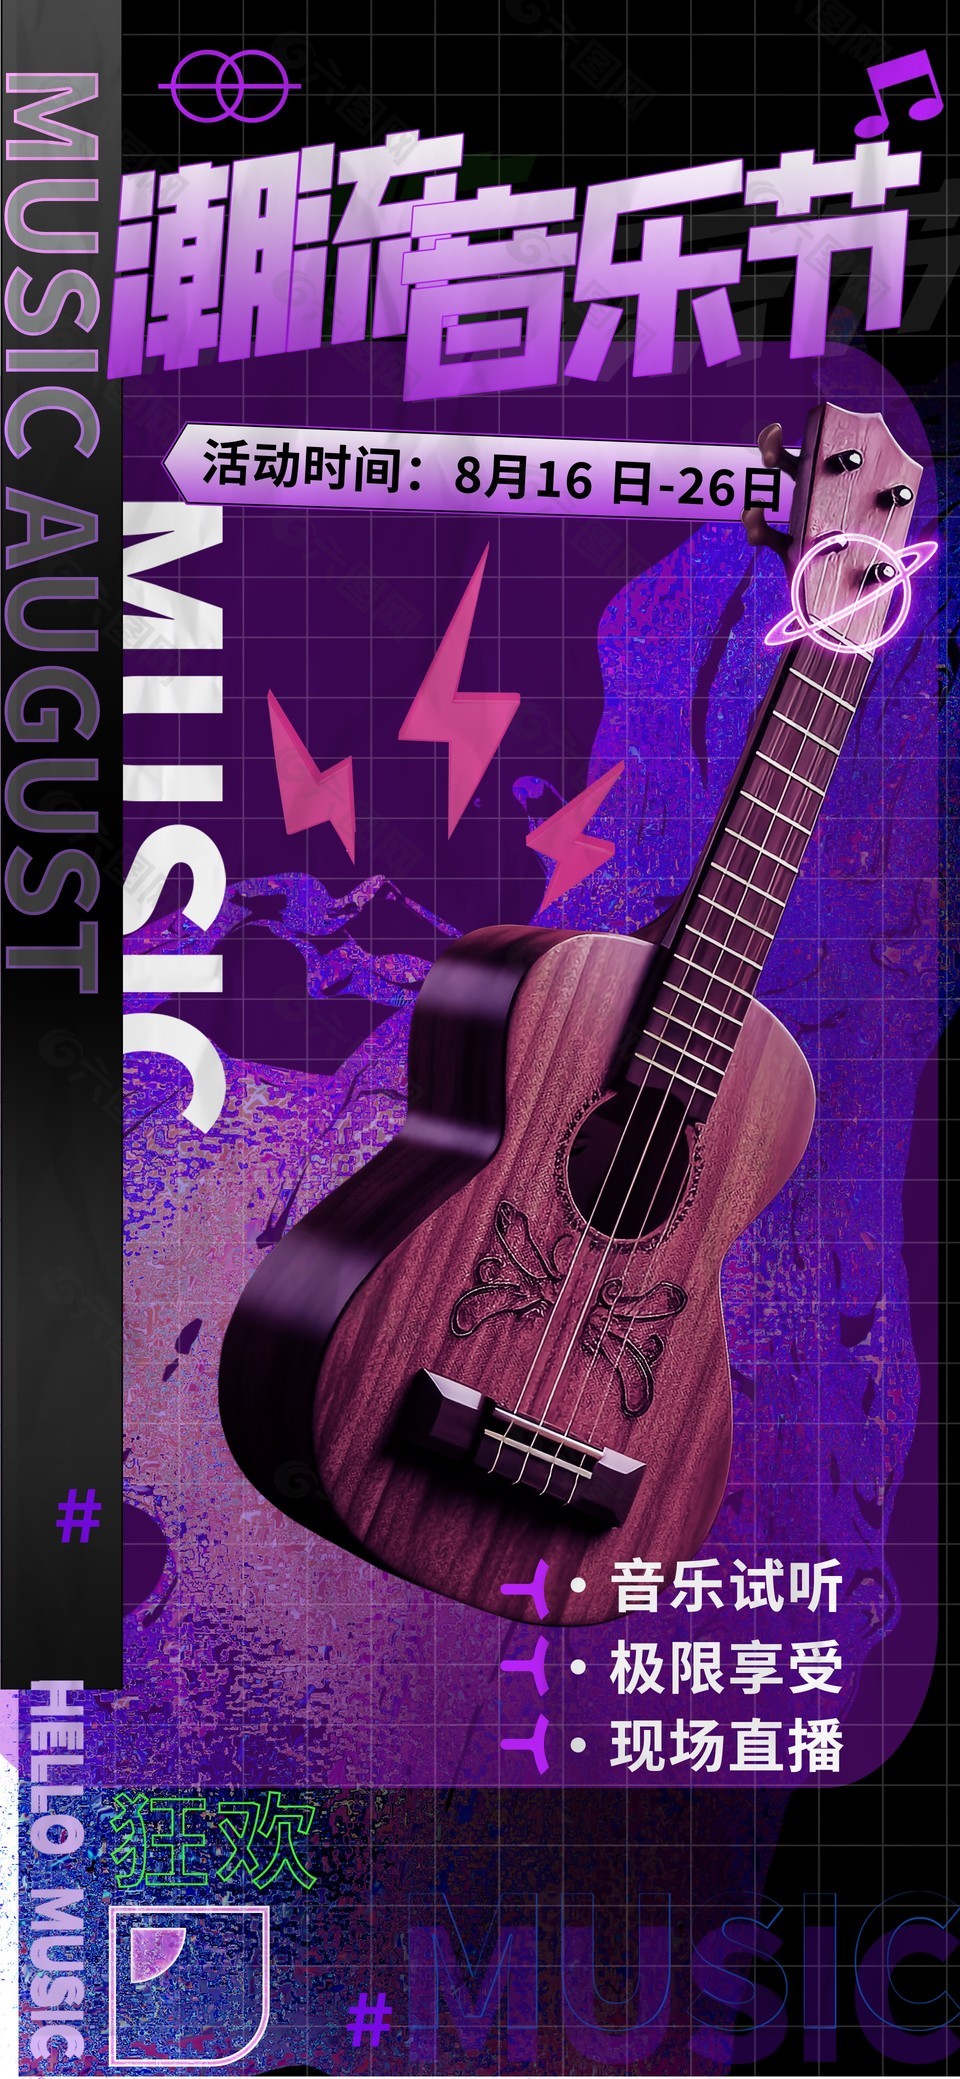 潮流音乐节紫色背景创意海报